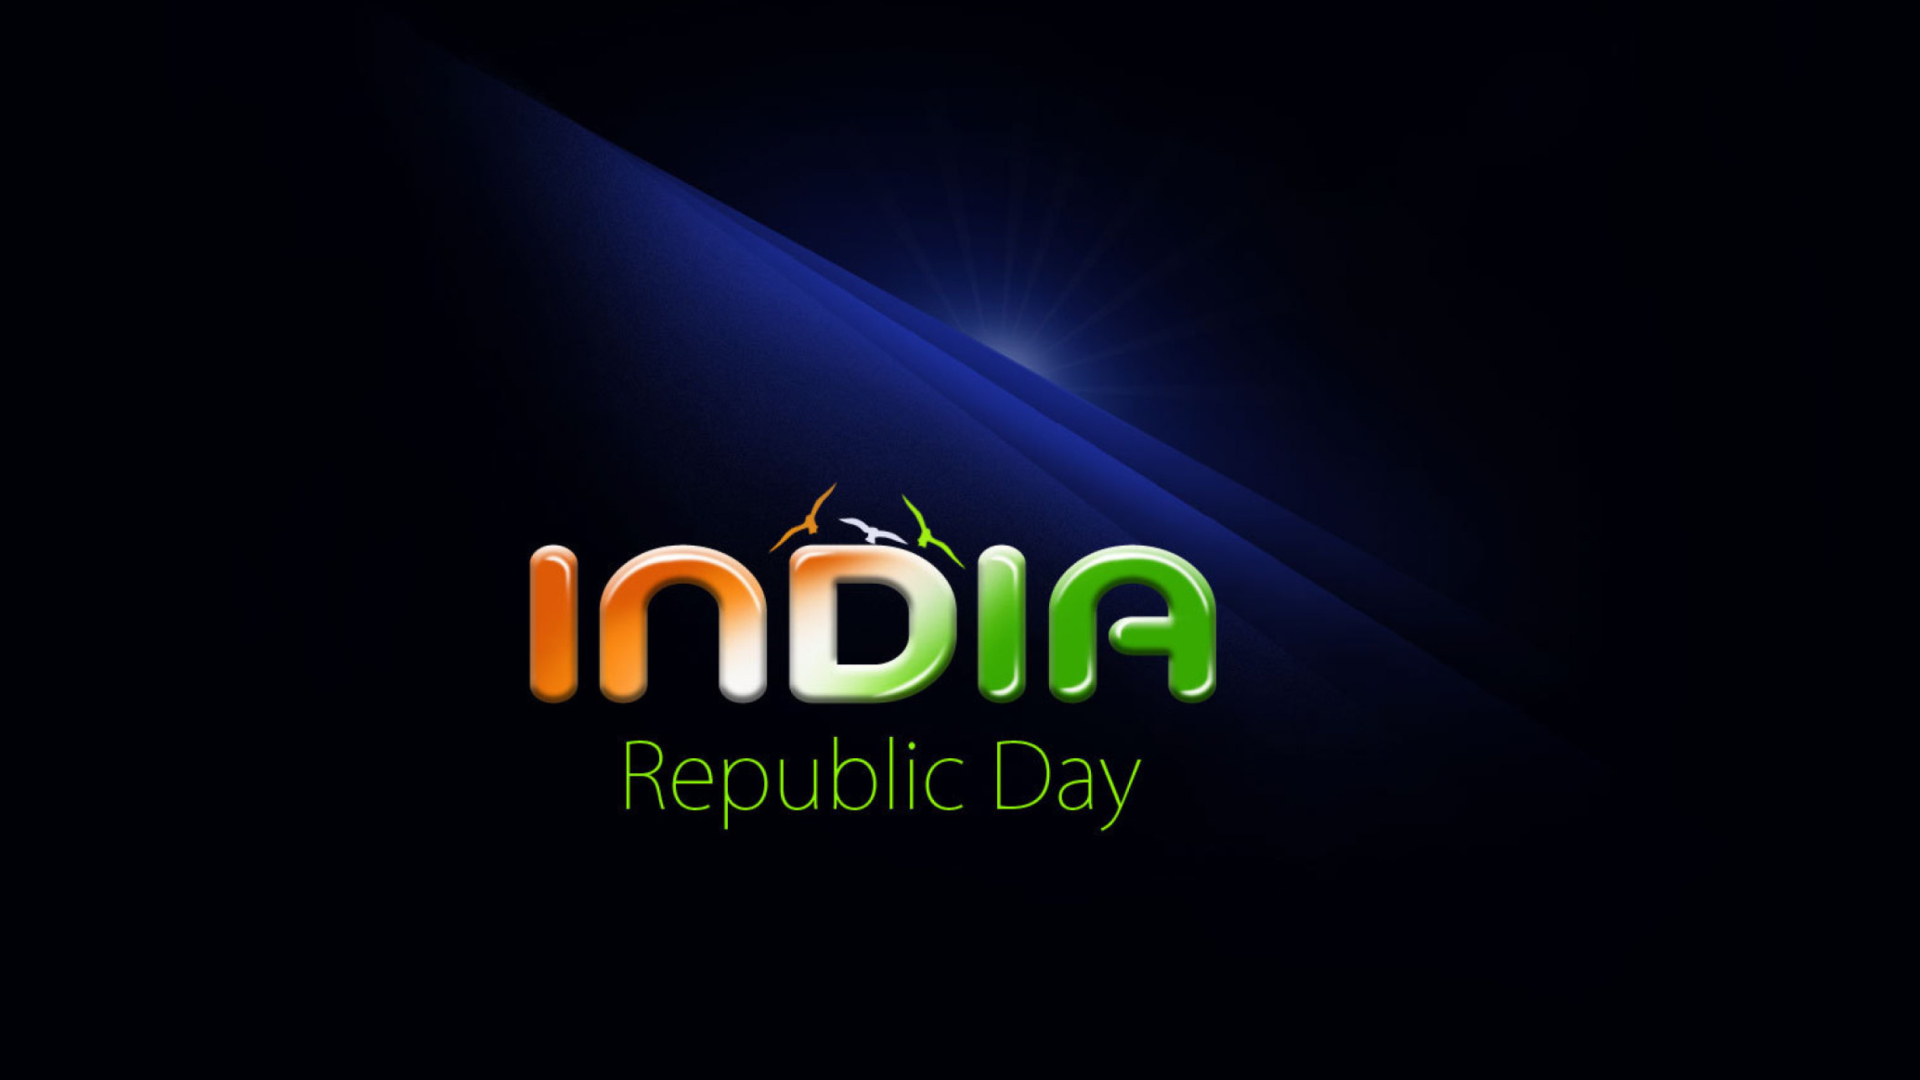 Sfondi Republic Day India 26 January 1920x1080